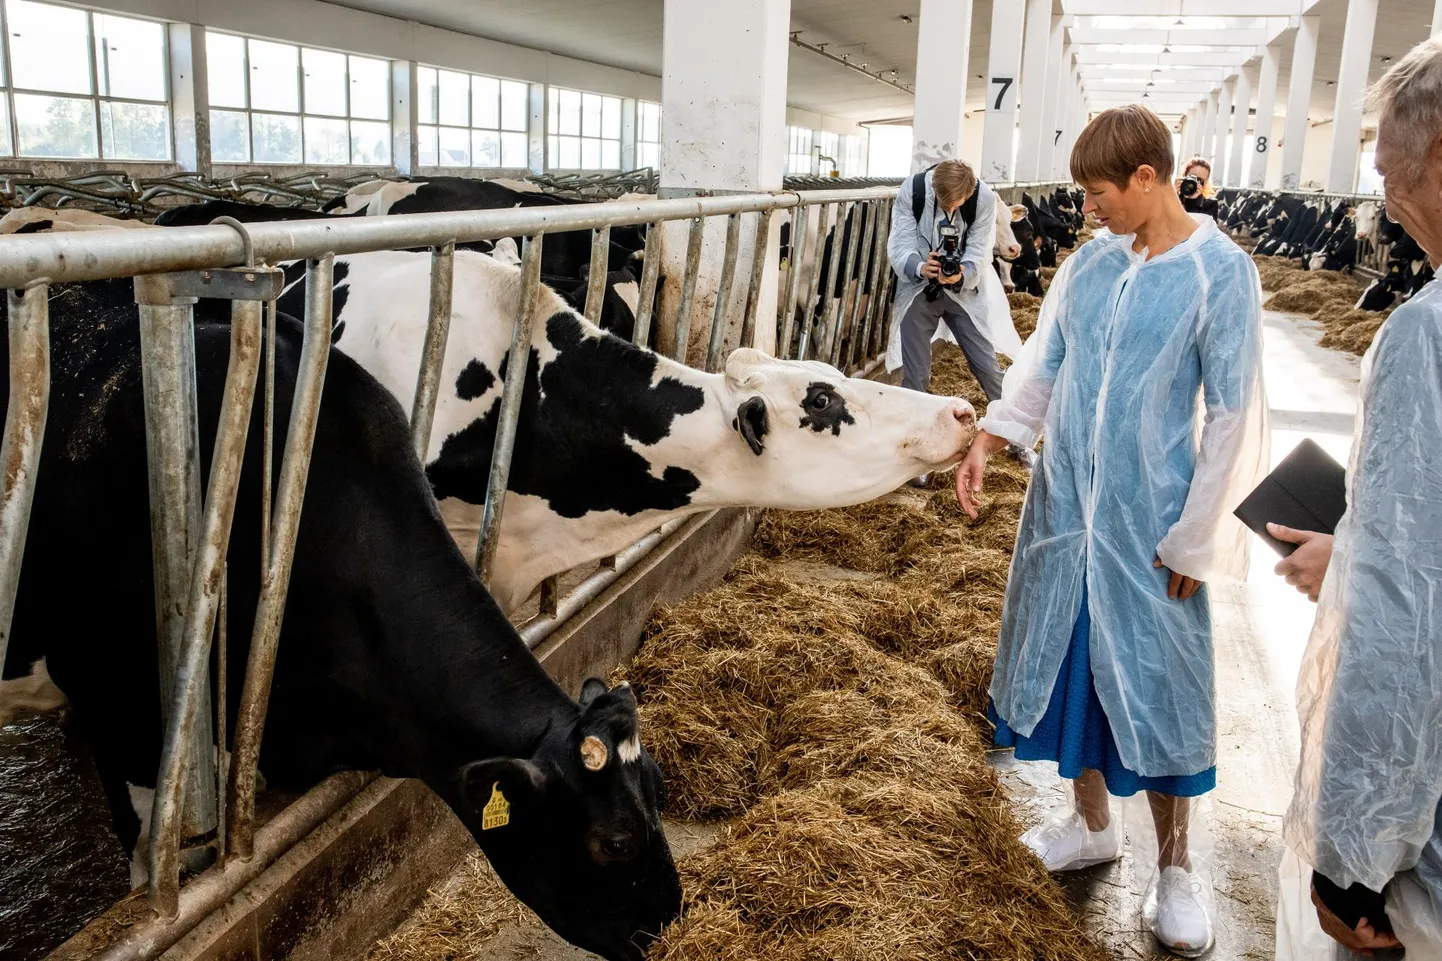 Suurlaudas kasutatakse põhuallapanu, lehmad on puhtad ja rahuolevad ning uudistavad meelsasti president Kersti Kaljulaidi kätt.